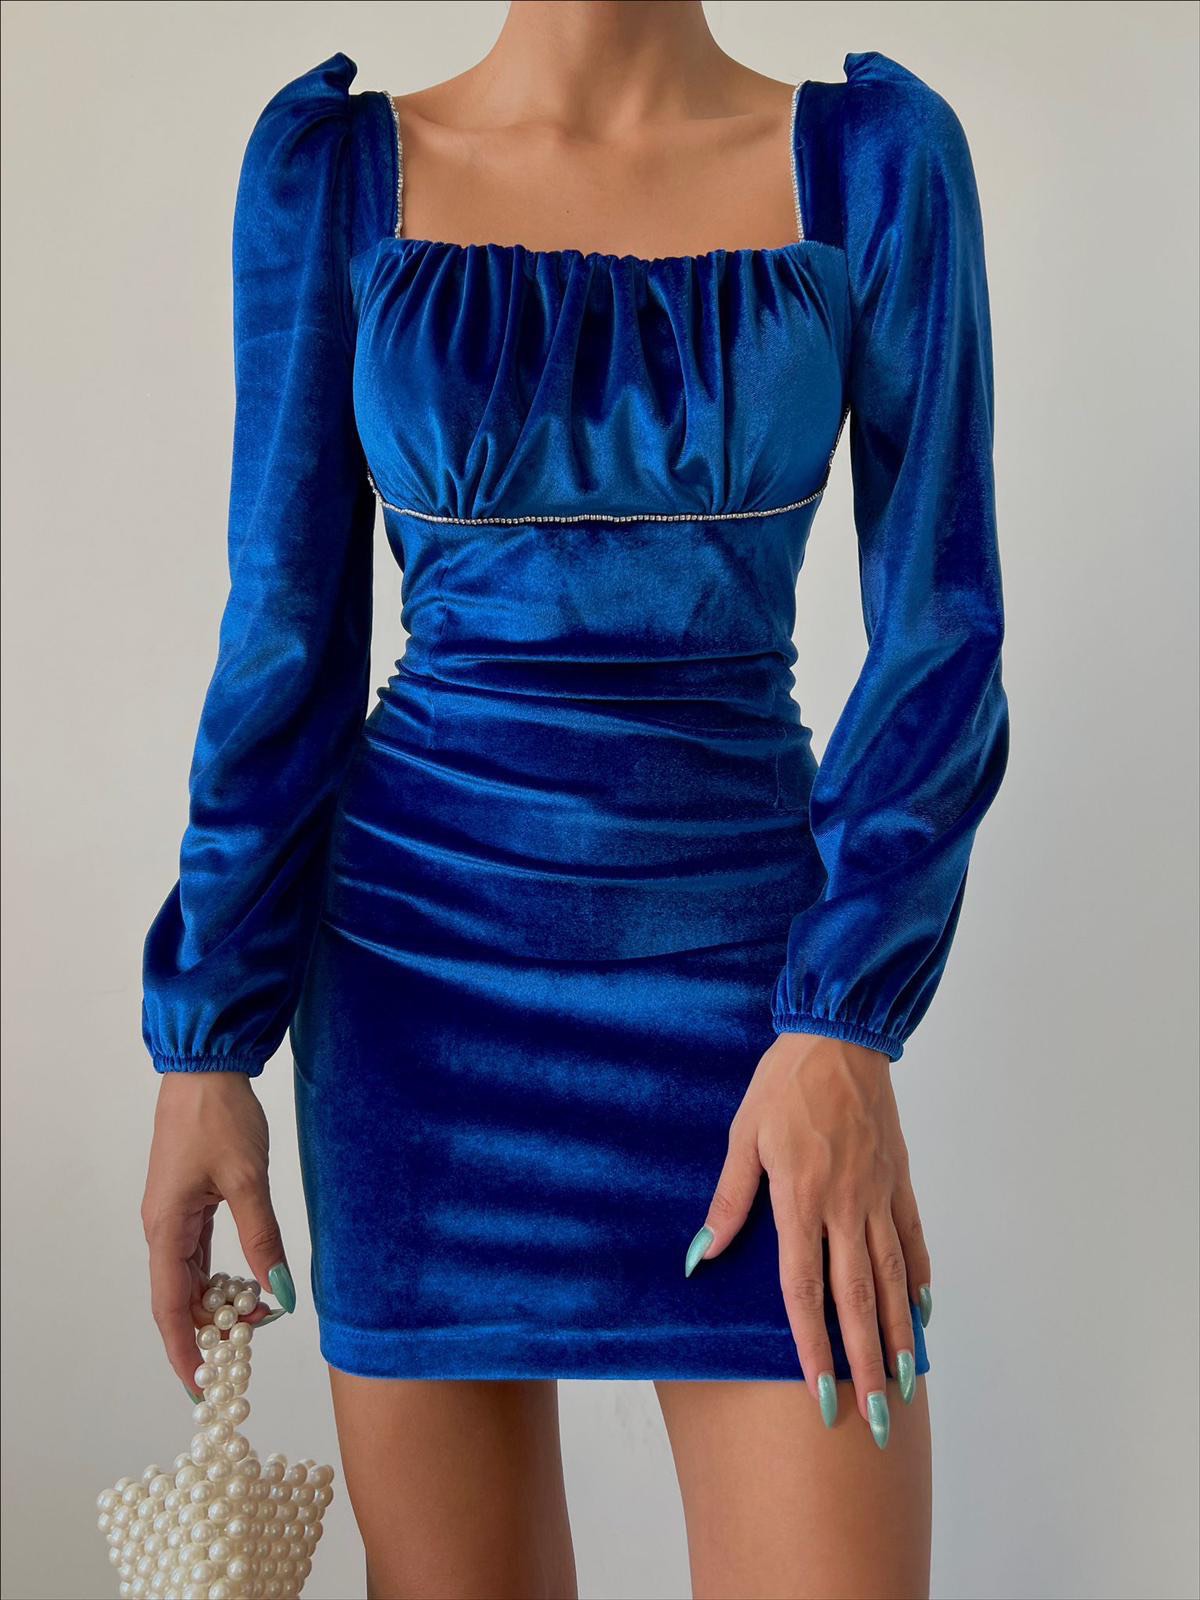 Дамска рокля VIVAN BLUE  https://bvseductive.com/products/womans-s-dresses-vivan-blue  модерна къса рокля в син цвят модел с удобна кройка, който описва силуета с дълги, буфан ръкави и стилно, право деколте с удобно затваряне чрез цип отзад ......